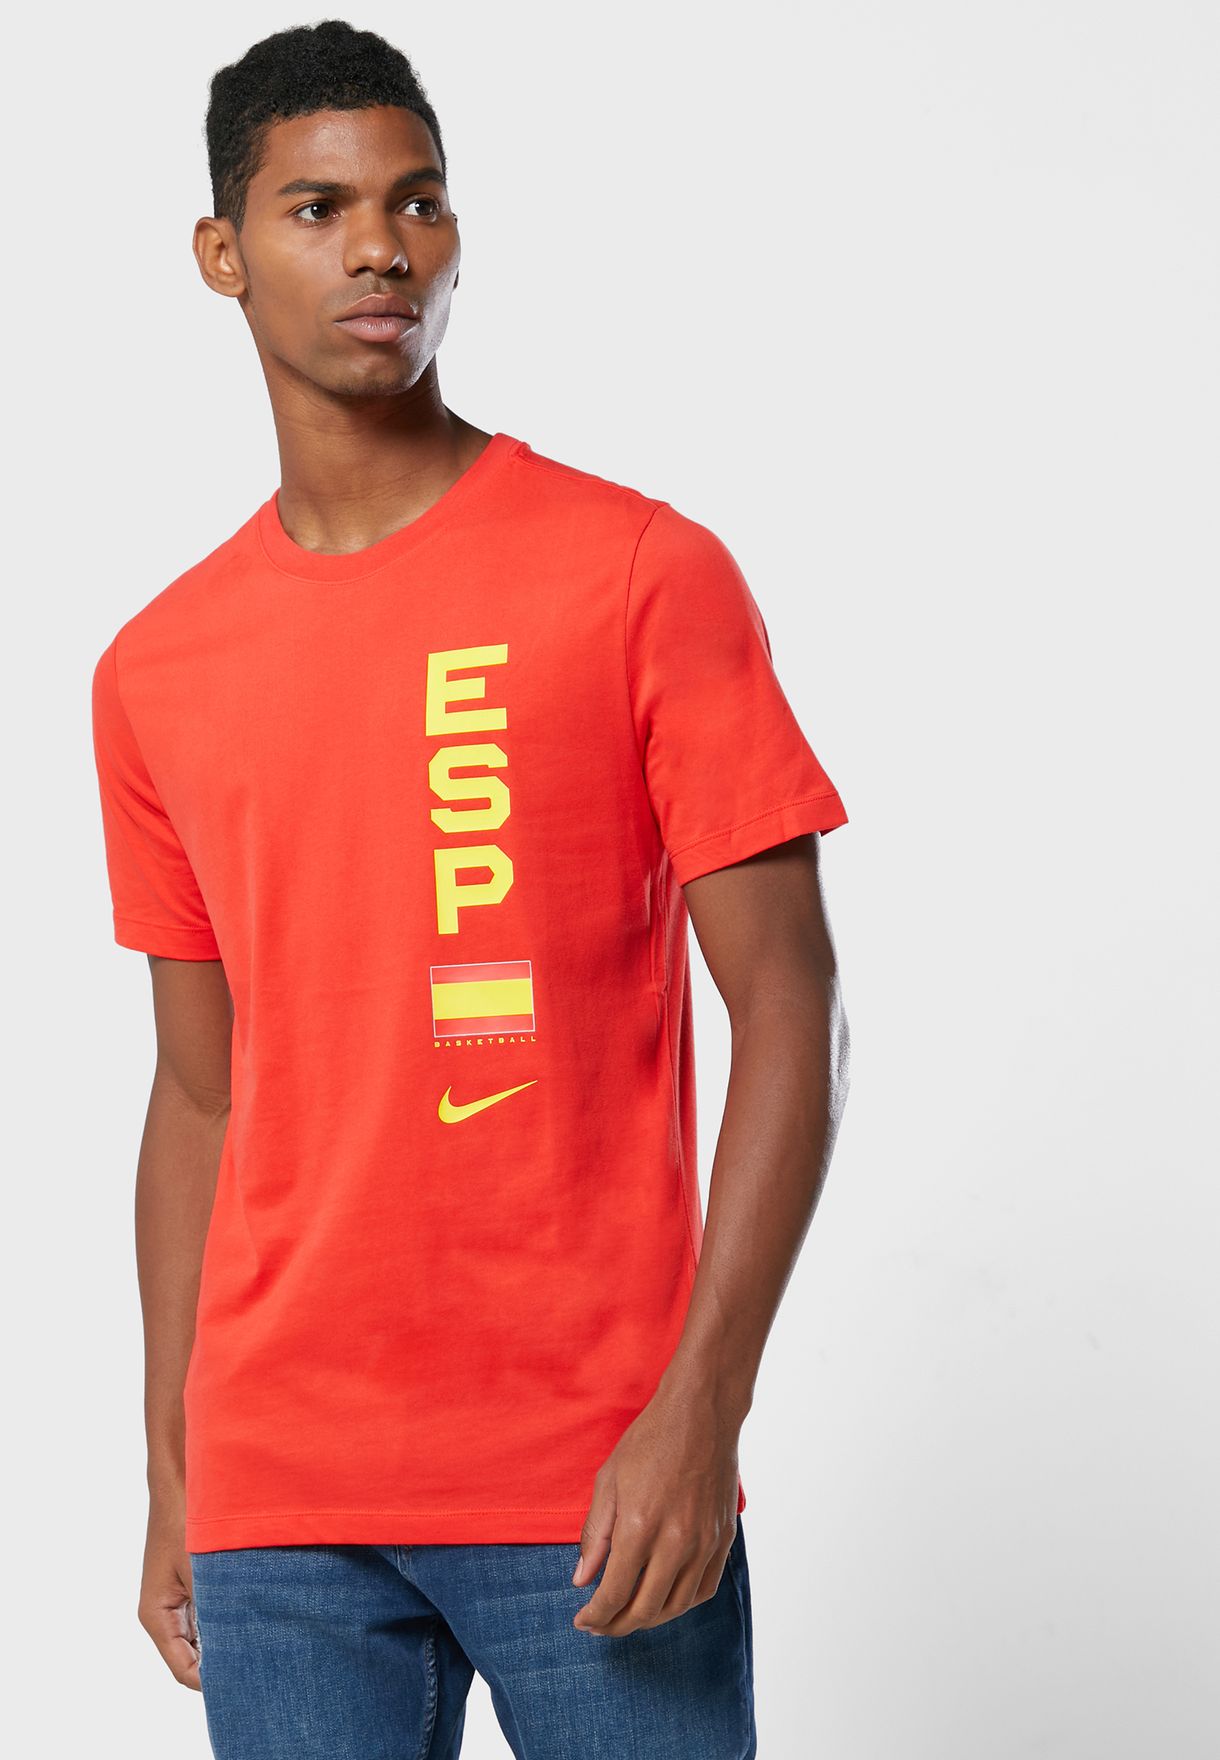 Spain Team T-Shirt